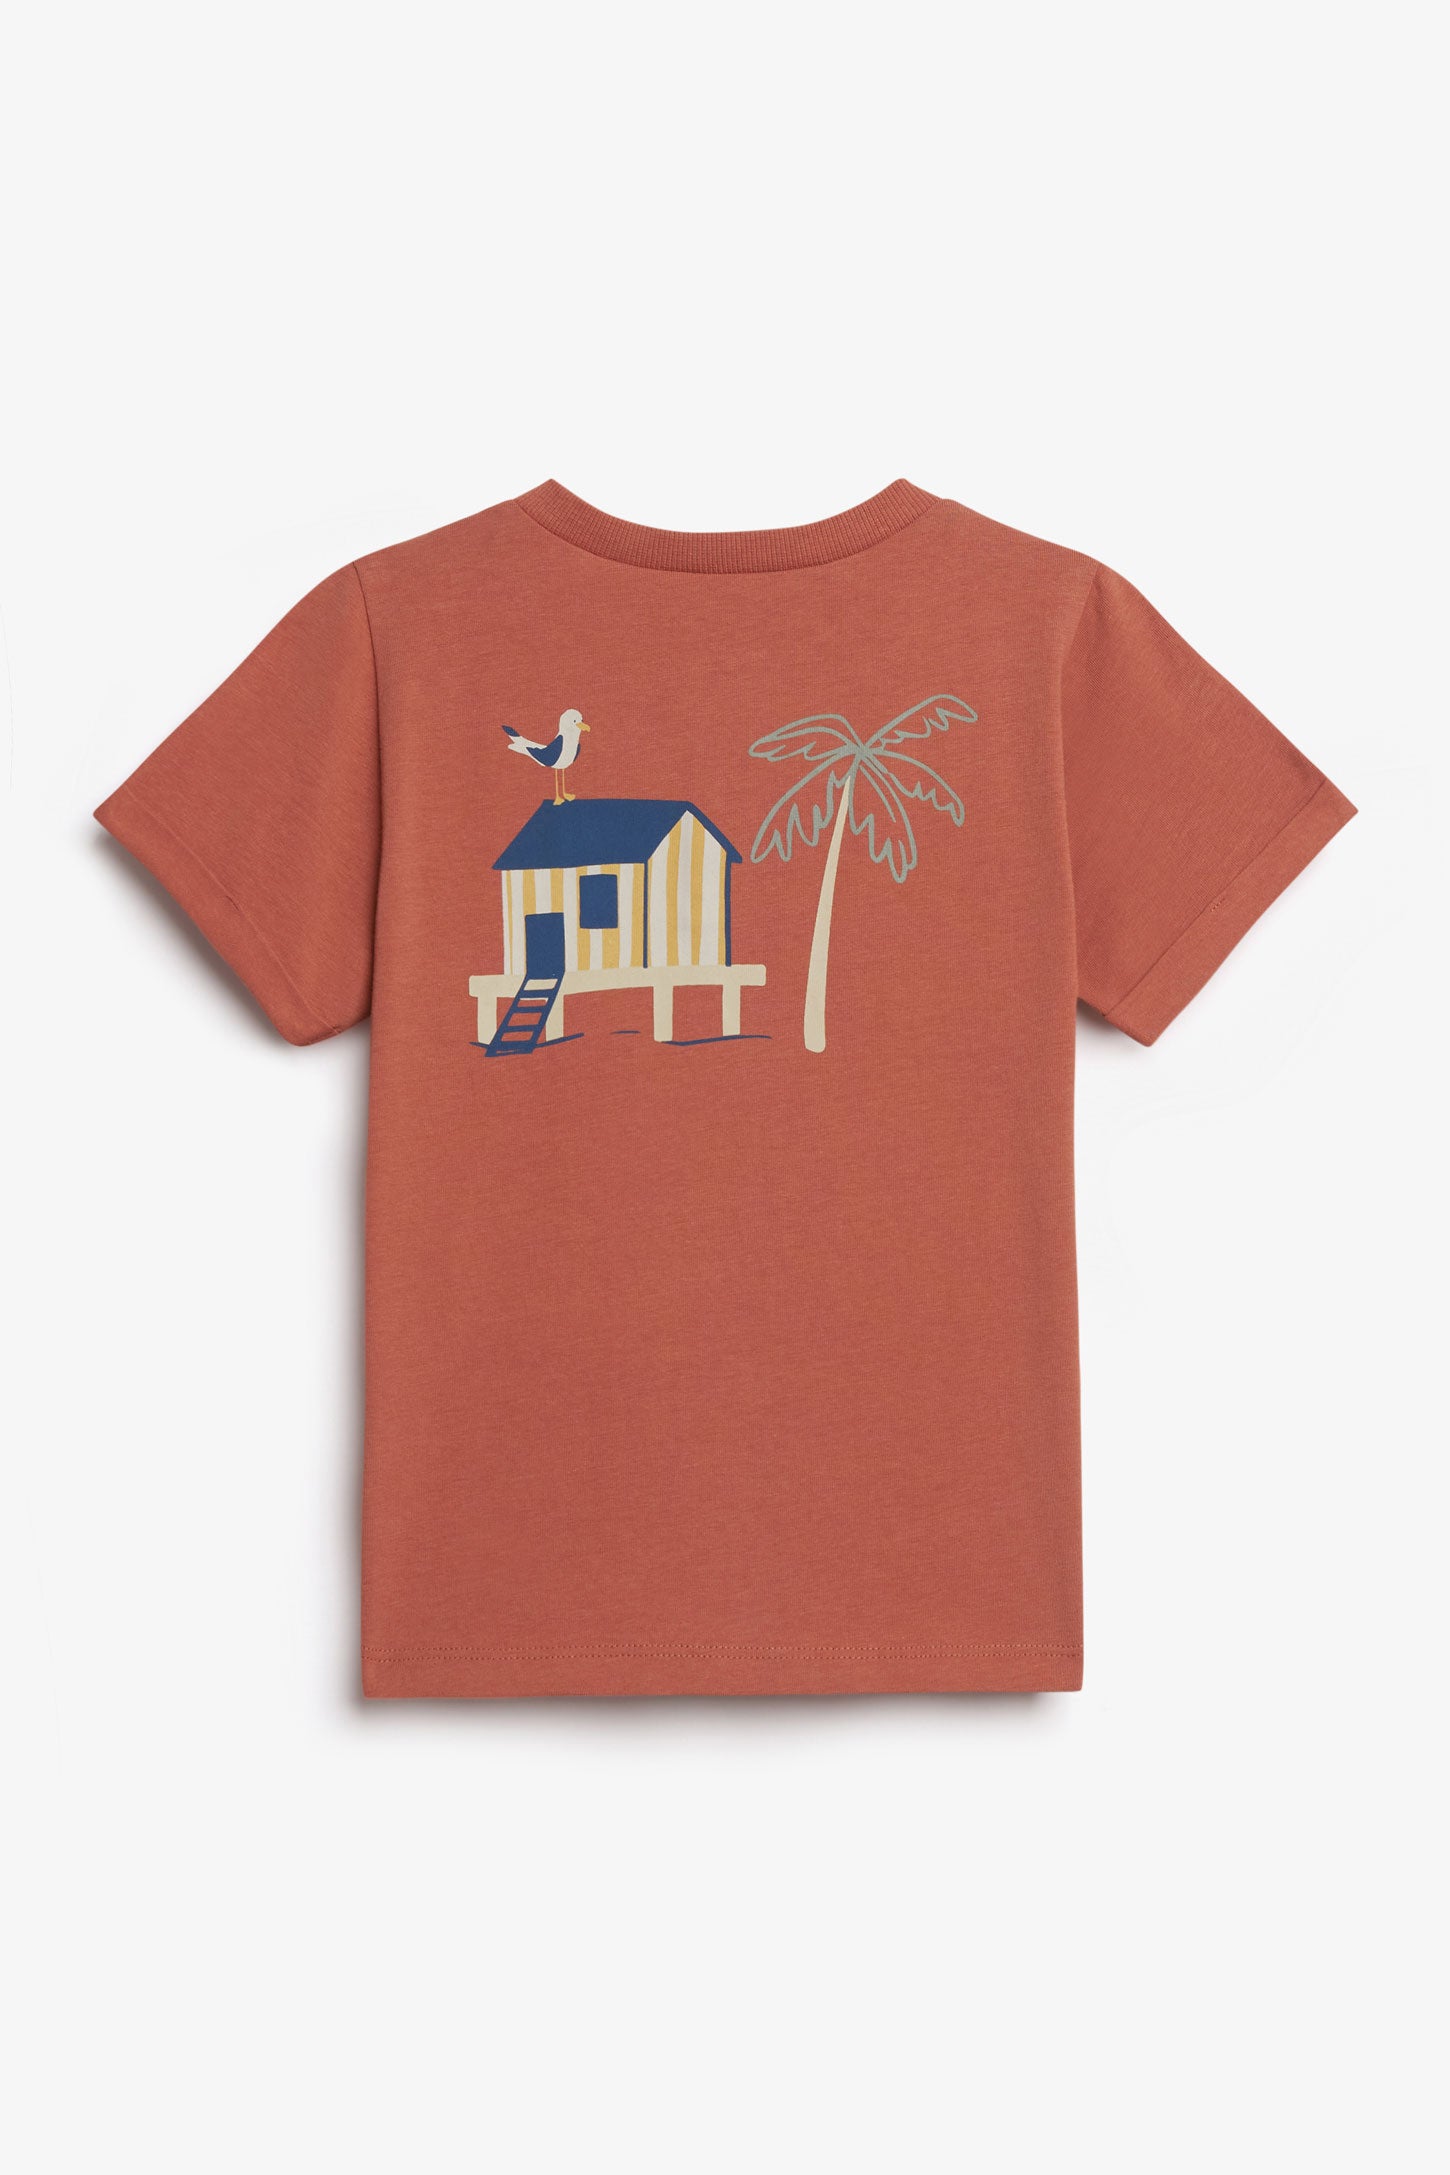 T-shirt henley en coton, 2T-3T - Bébé garçon && ROUILLE